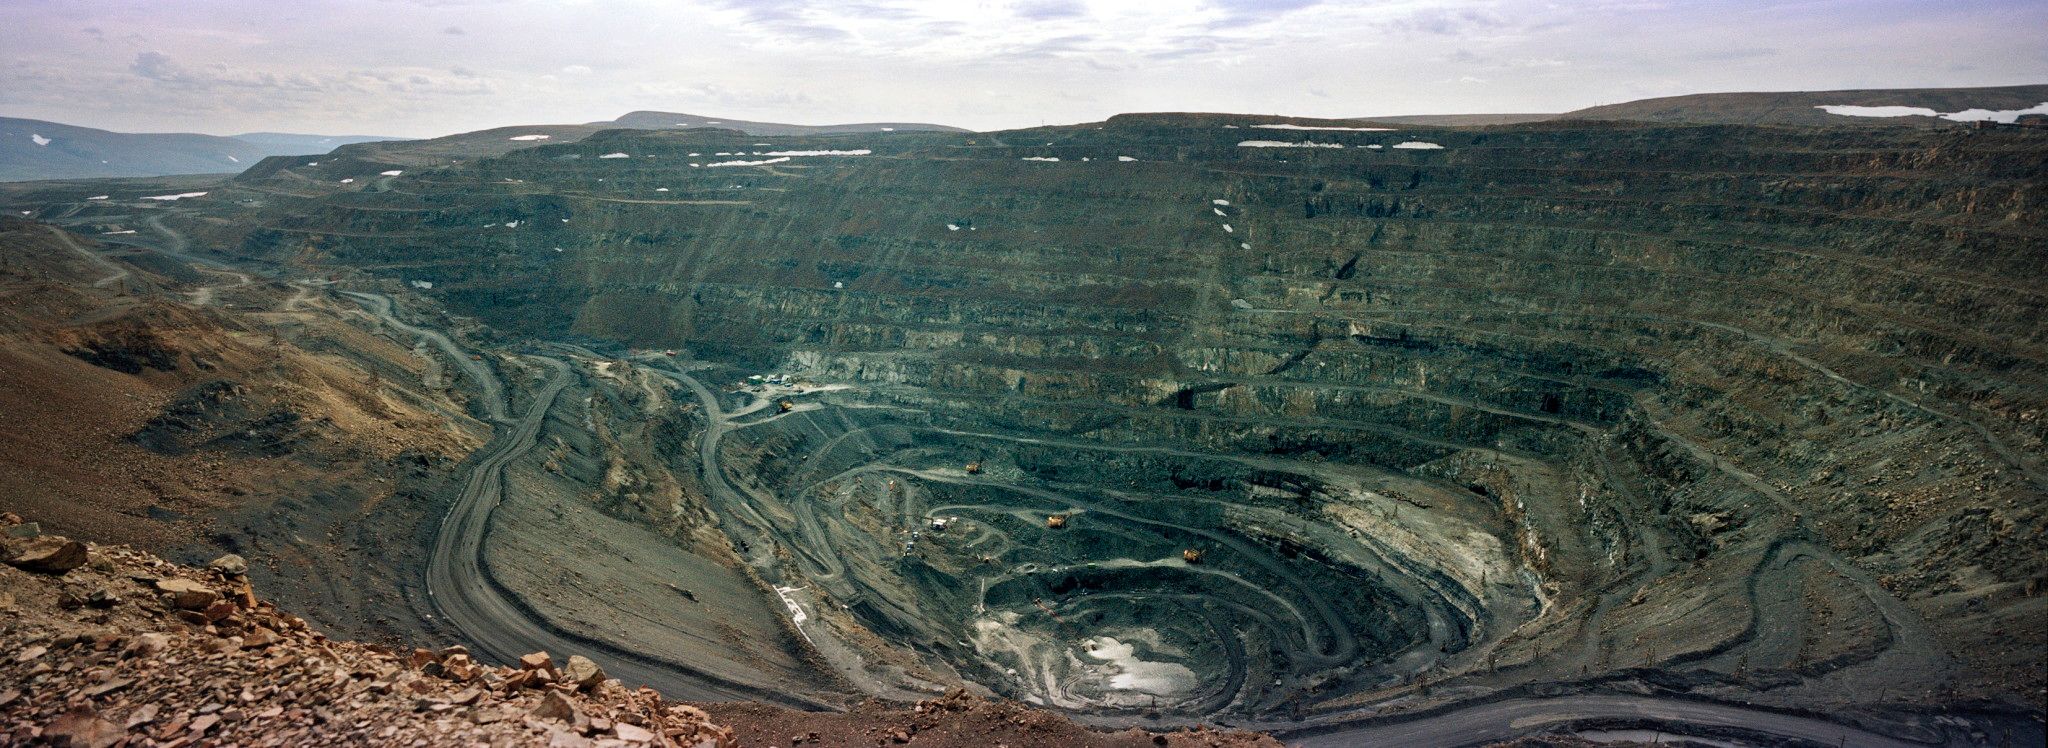 Medvezhy Ruchey, Krasnoïarsk, Russie, juillet 2018. Mine à ciel ouvert de nickel et de cuivre dans le kraï de Krasnoïarsk. À partir du milieu des années 1930, des dizaines de milliers de prisonniers, essentiellement politiques, ont trimé et sont morts dans le Norillag, le goulag de Norilsk, la grande ville la plus septentrionale et la plus froide du monde. Aujourd'hui, la mine appartient à Norilsk Nickel.